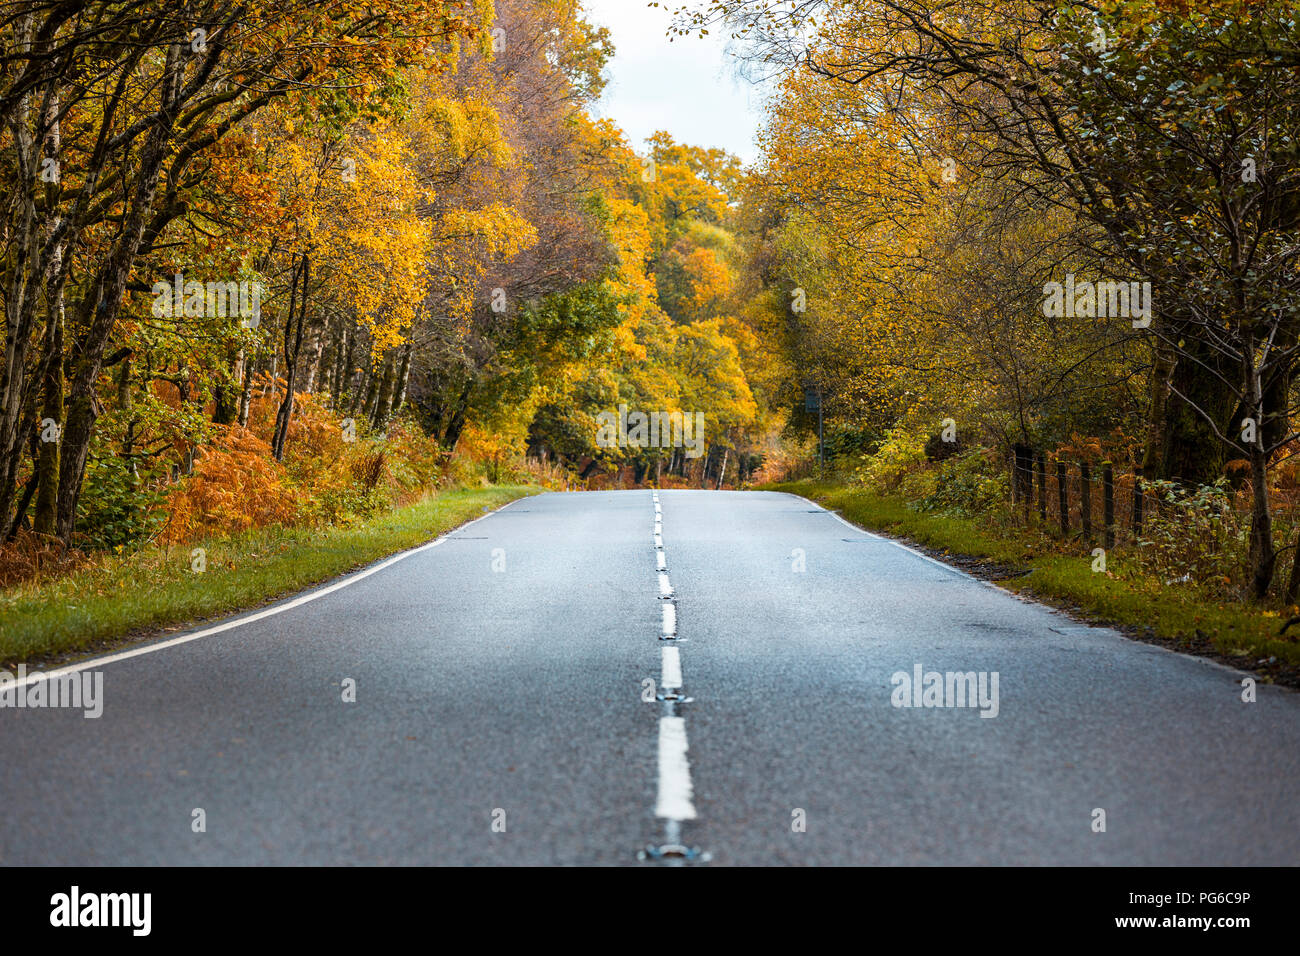 Reino Unido, Escocia, en las tierras altas de carretera que pasa a través de los árboles de naranja y amarilla Foto de stock